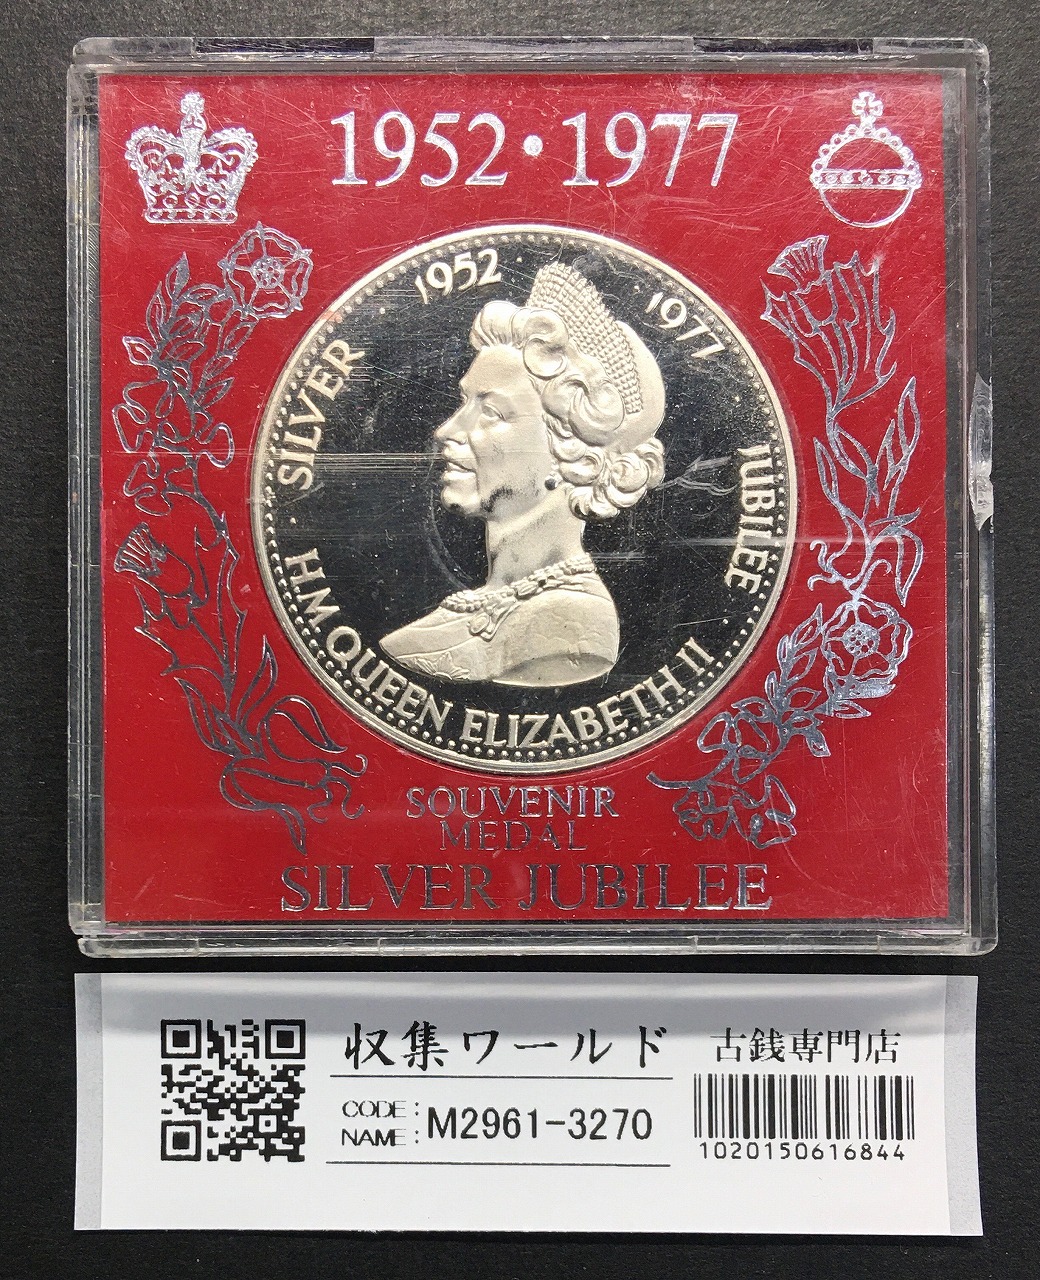 エリザベス2世 1952-1977年 シルバージュビリー 25年記念メダル 未使用極美